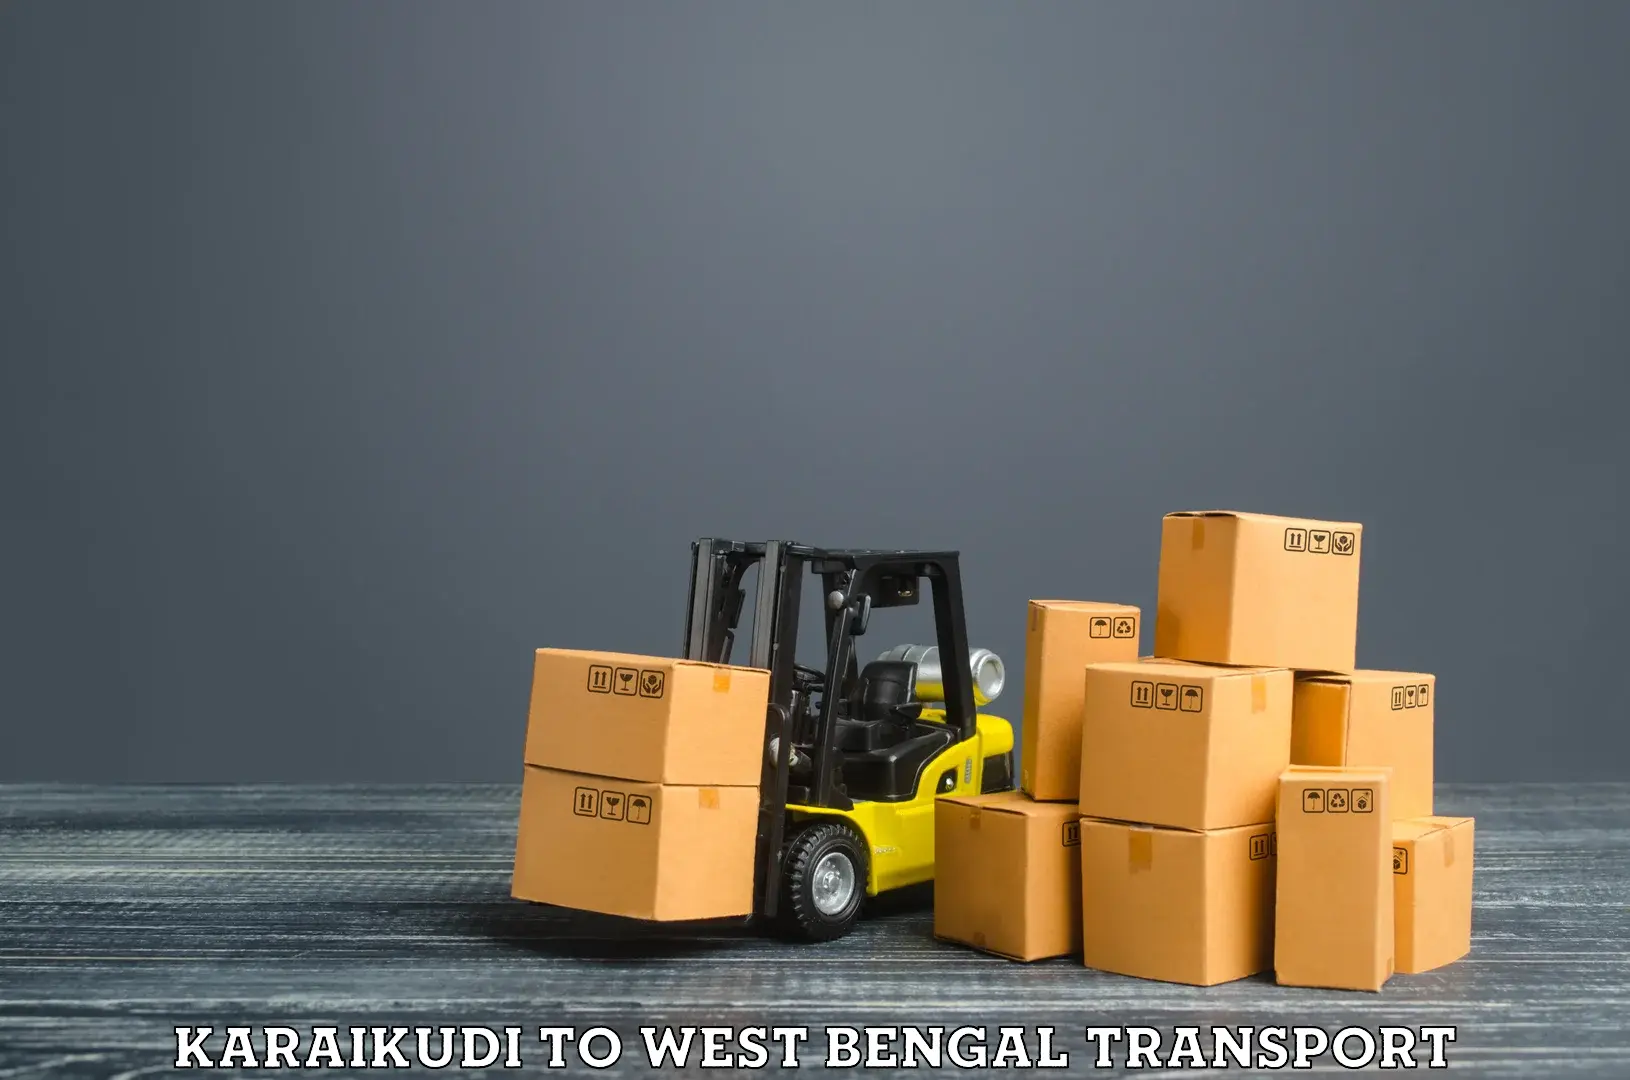 Land transport services Karaikudi to NIT Durgapur